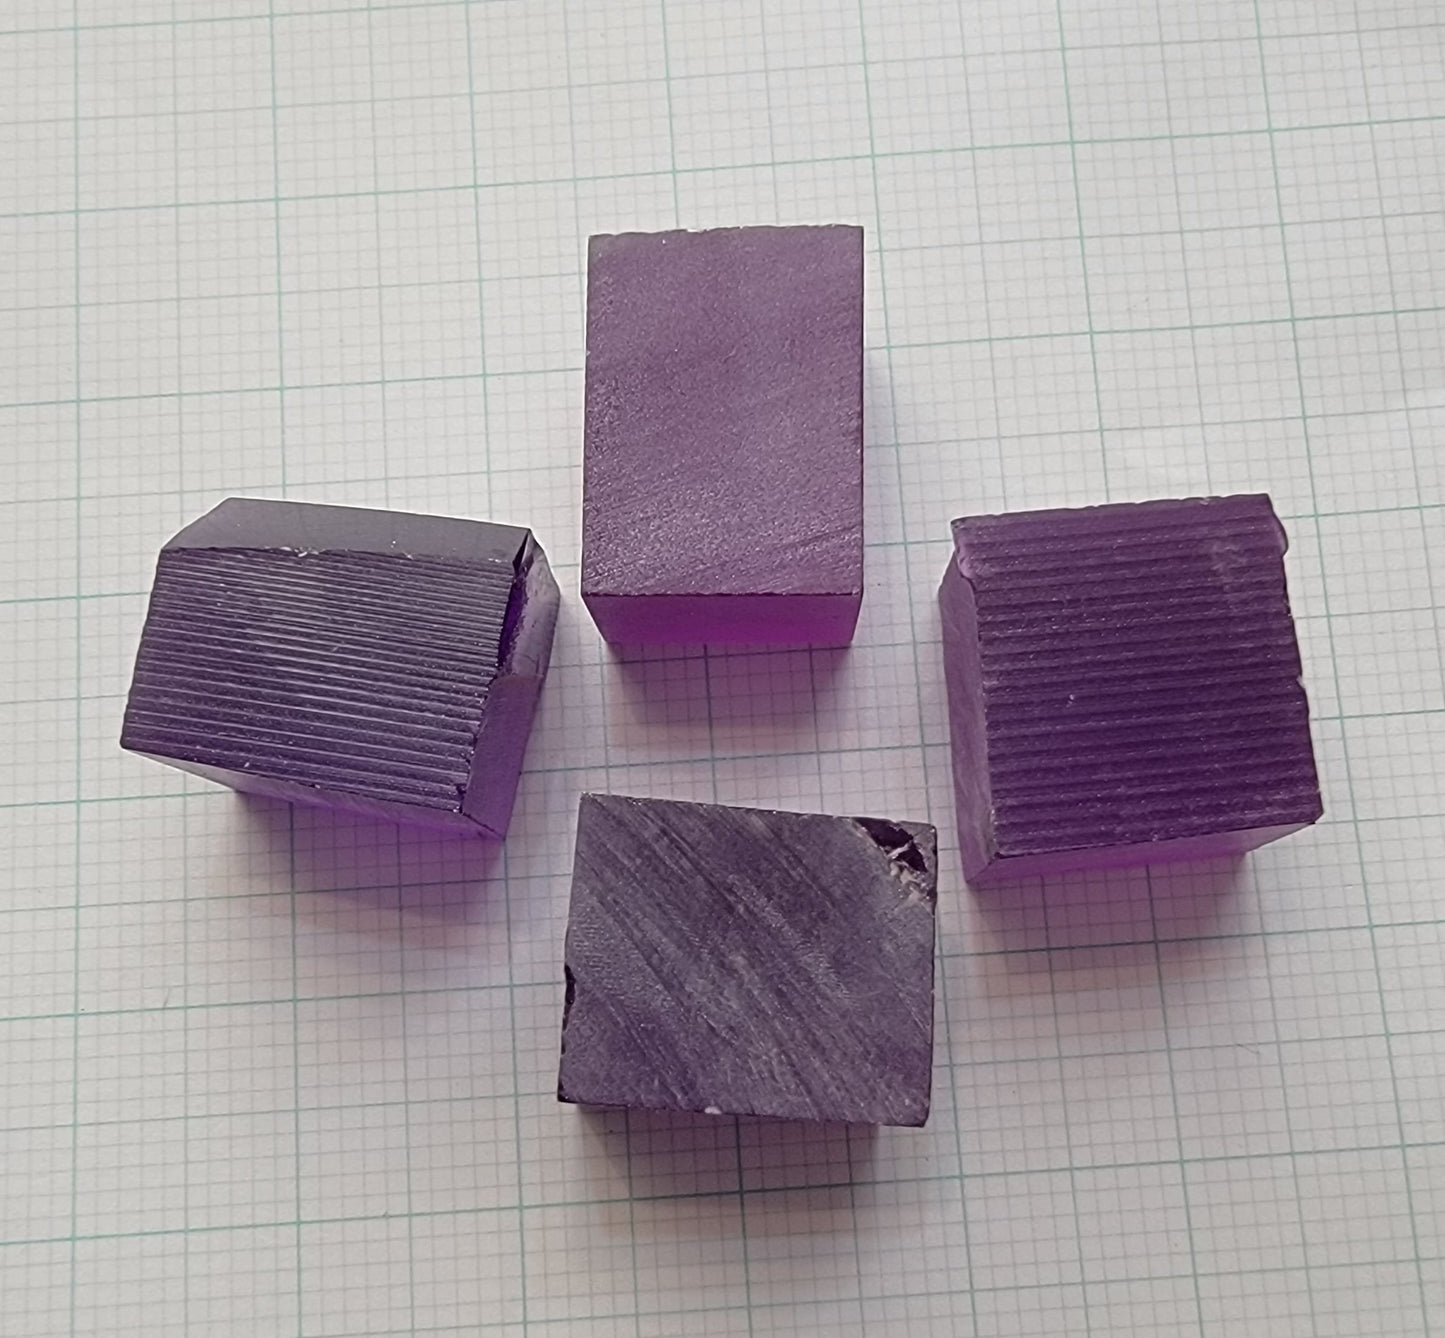 Purple Sapphire Rough, Czochralski Grown Fancy Sapphire Crystals